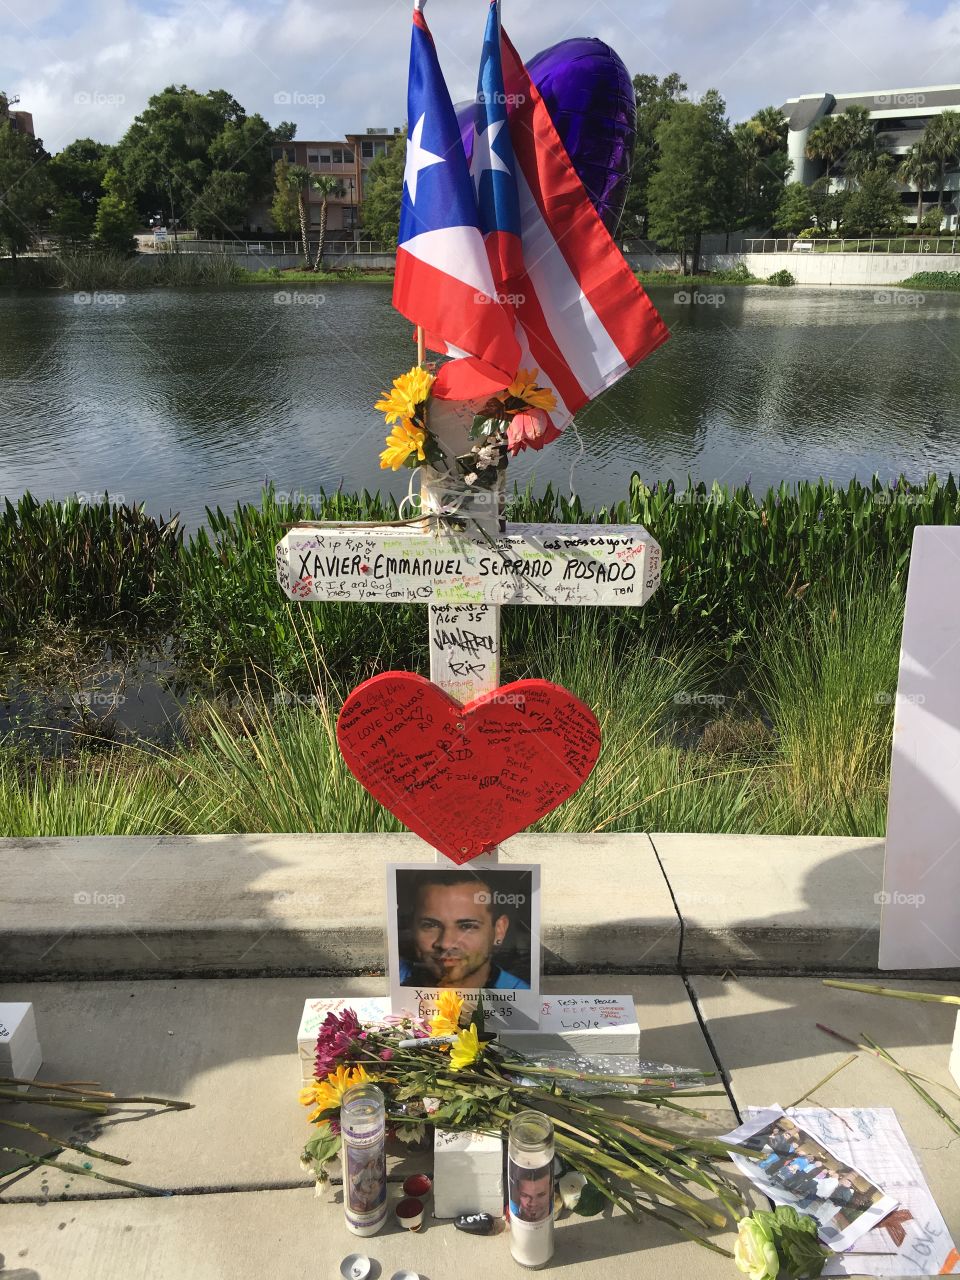 In memory of Pulse victim XAVIER EMMANUEL SERRANO ROSADO.